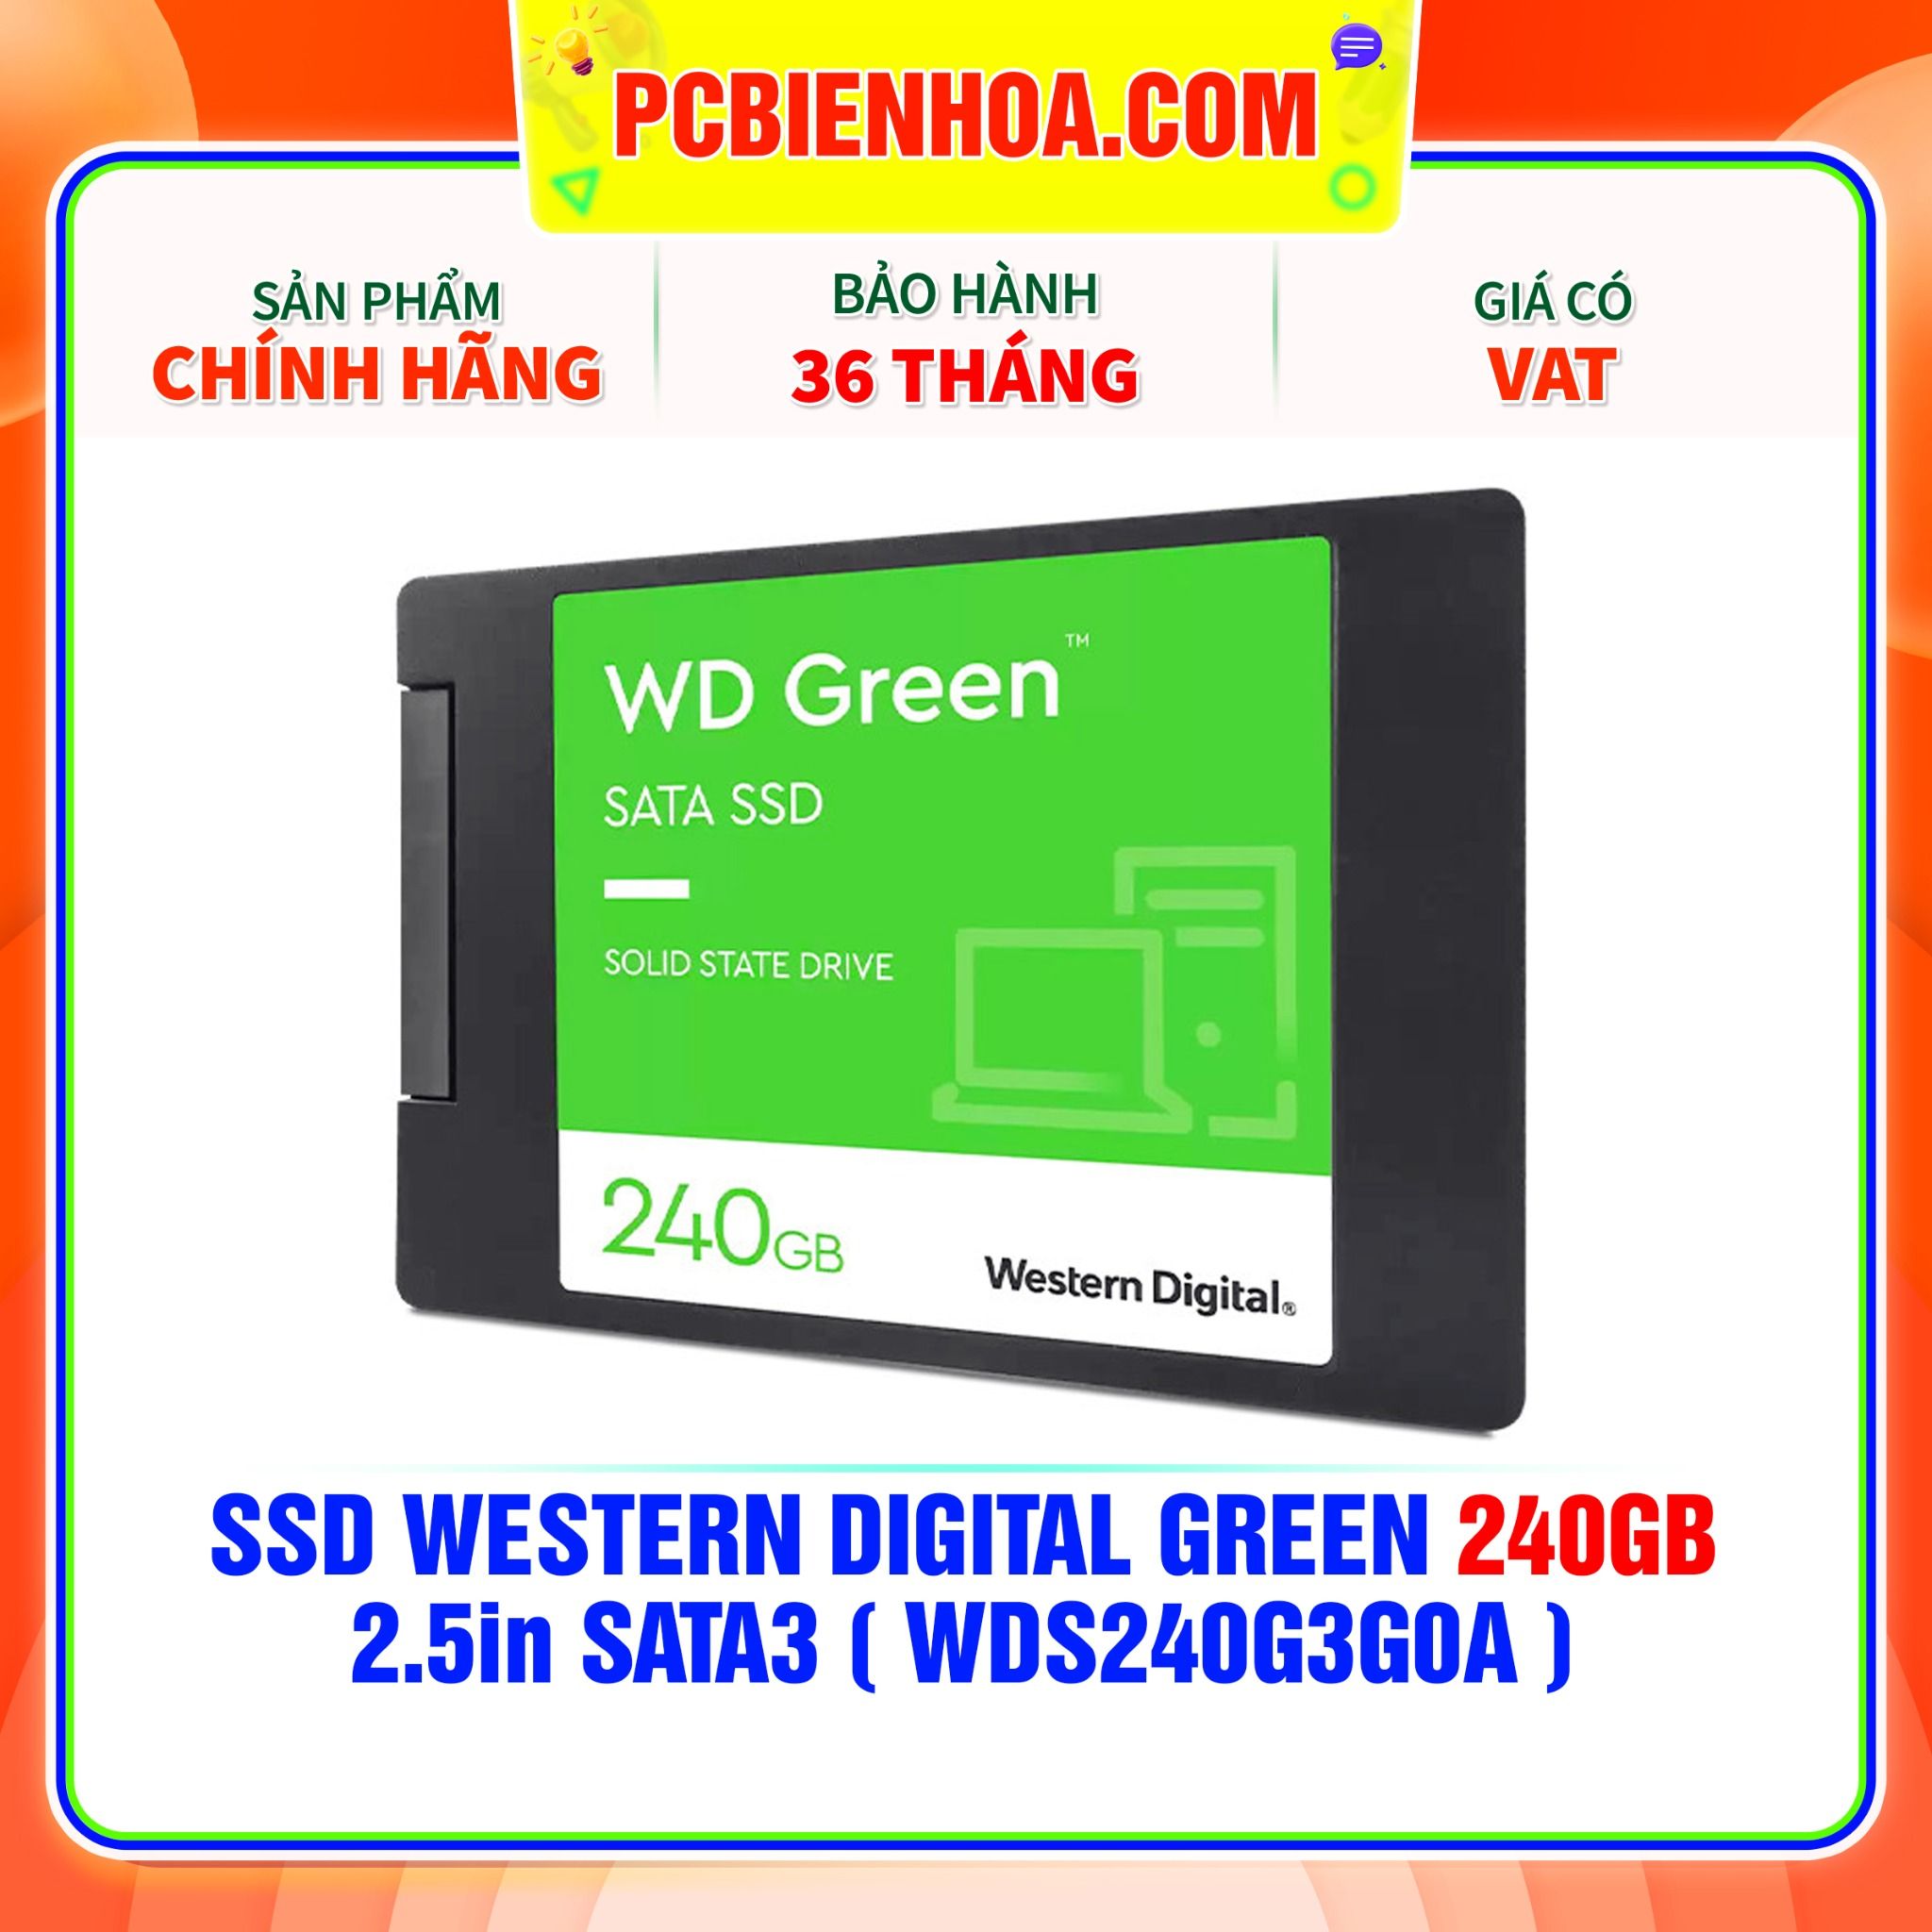  SSD WESTERN DIGITAL GREEN 240GB - 2.5in SATA3 ( WDS240G3G0A ) 